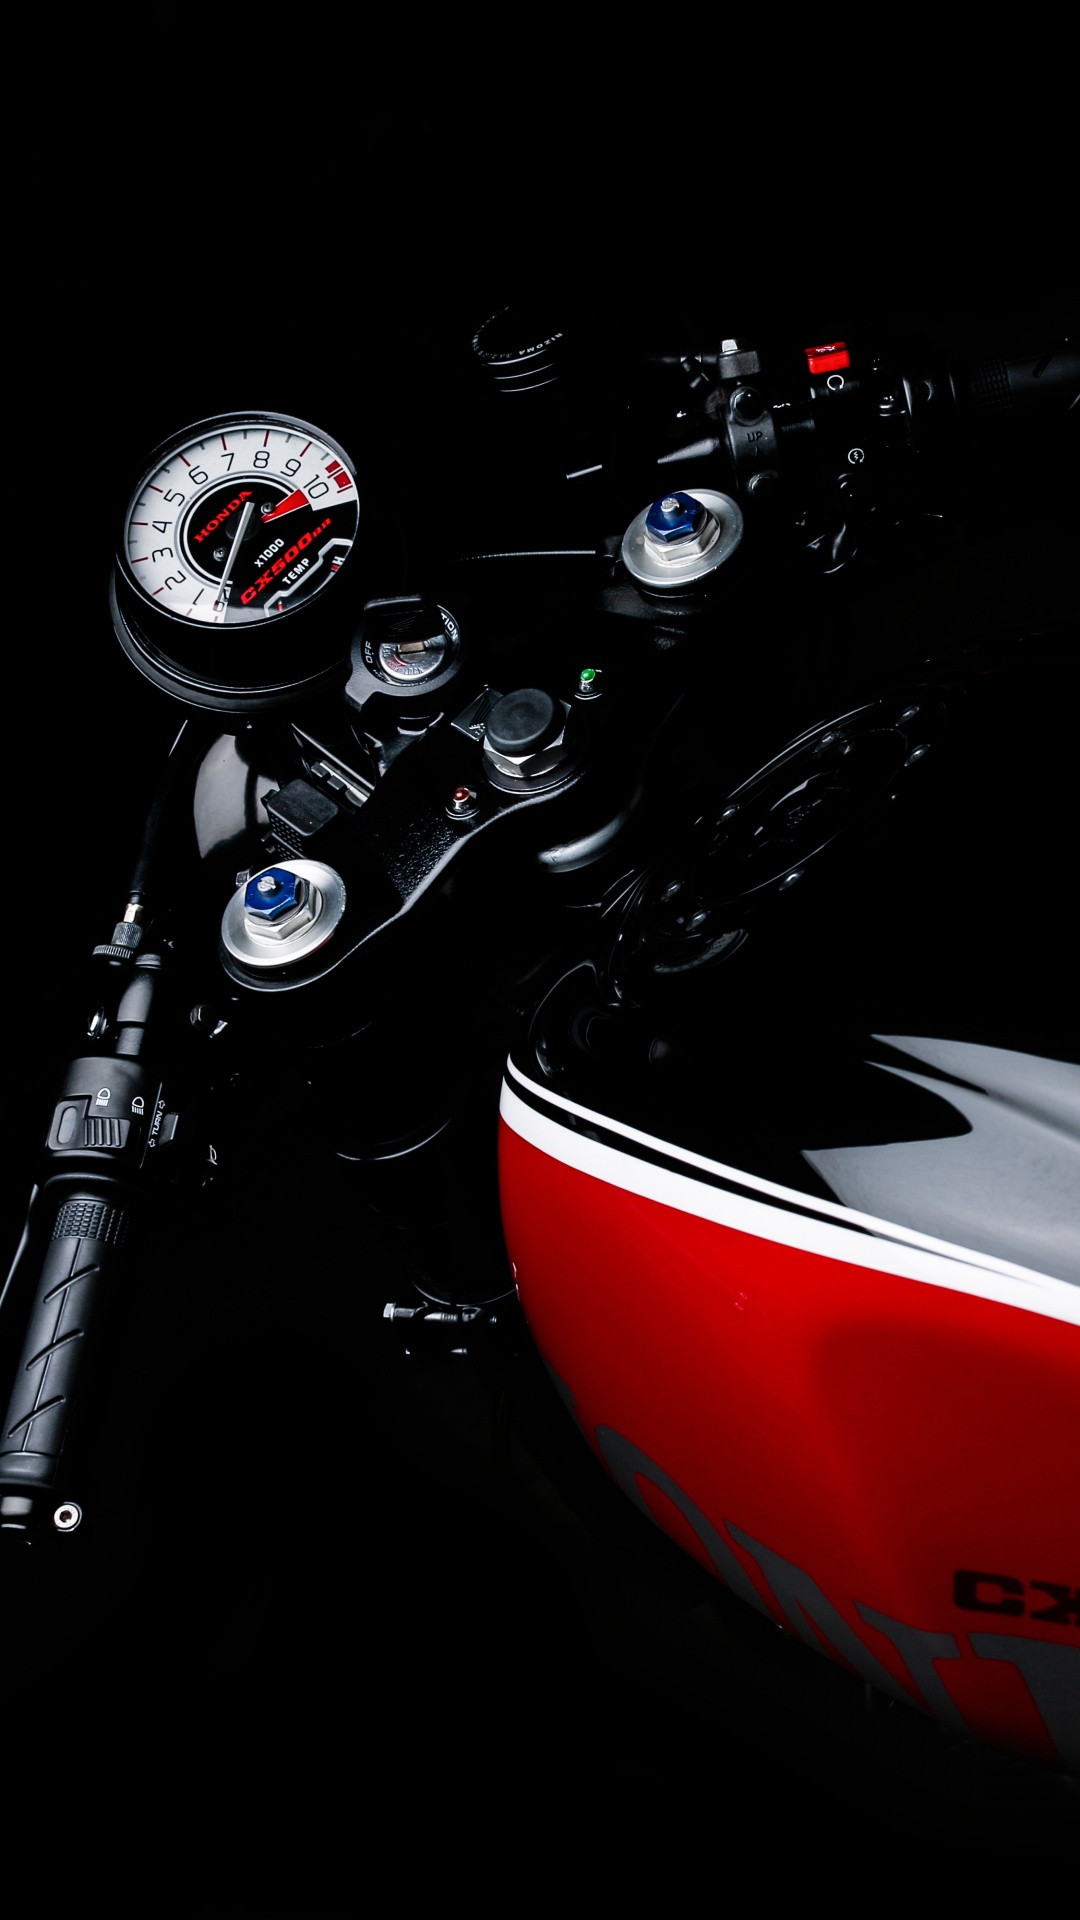 Motocicleta Honda Roja y Negra. Wallpaper in 1080x1920 Resolution